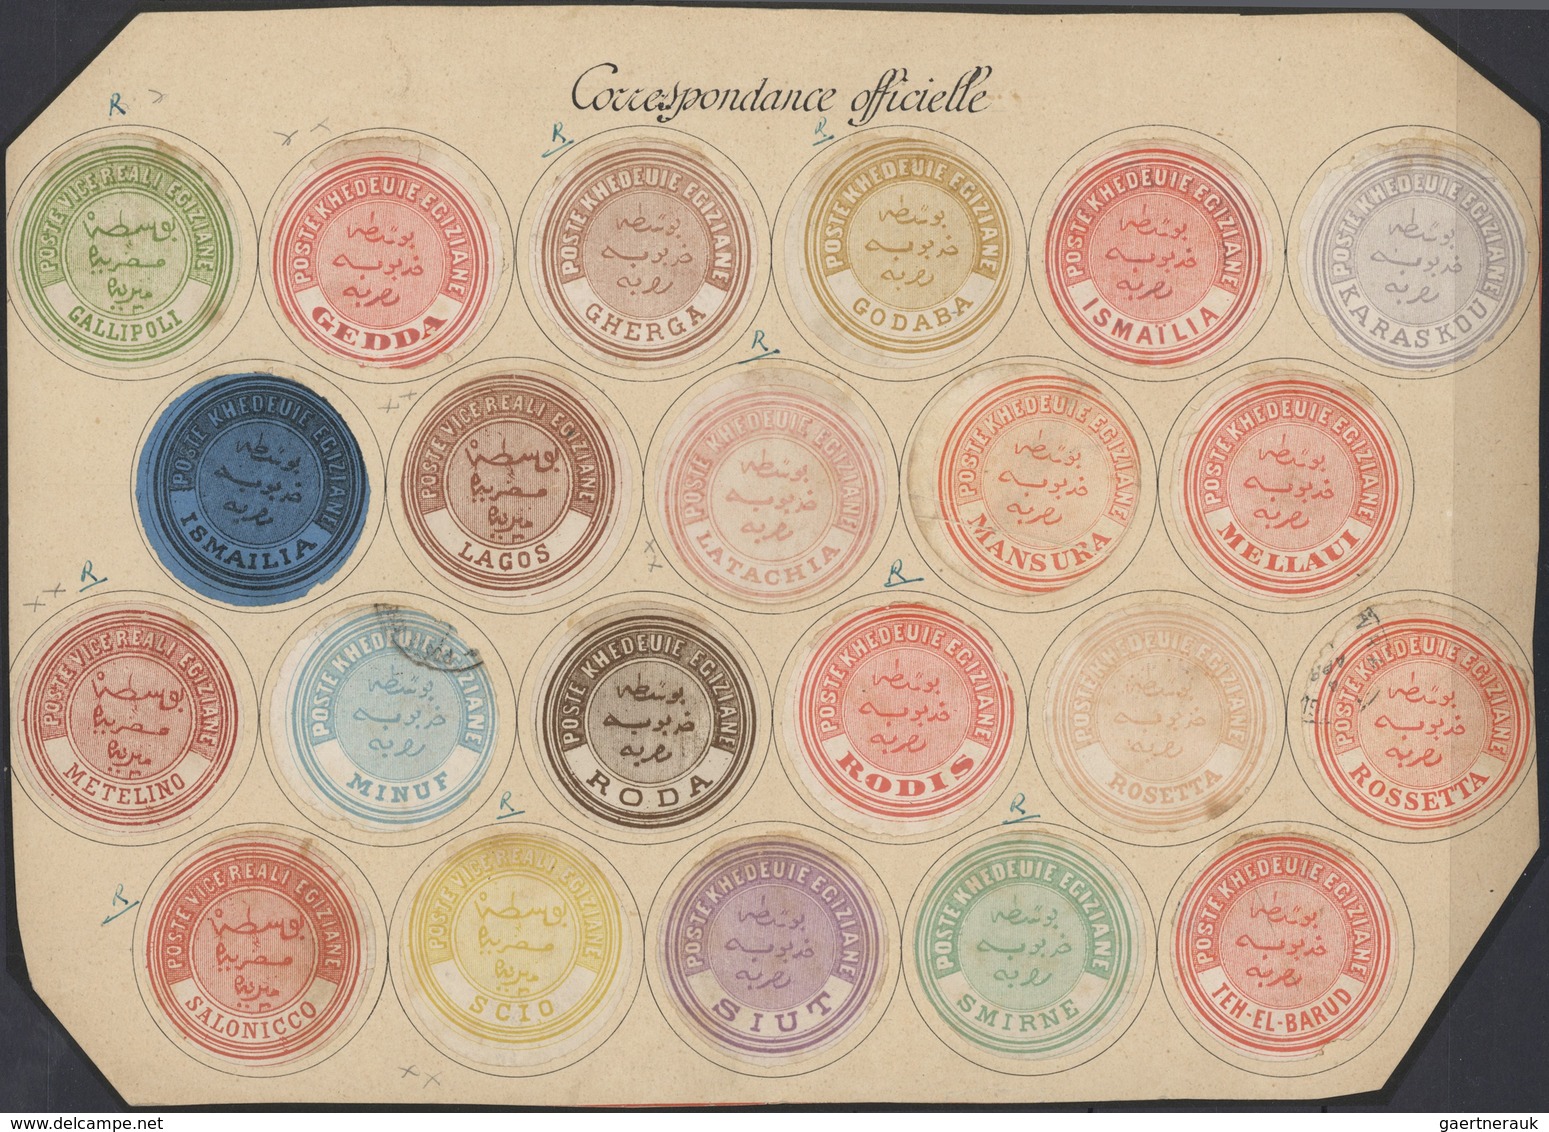 22133 Ägypten - Dienstmarken: 1864/1892 (ca.), INTERPOSTALS, collection of apprx. 148 interpostal seals in